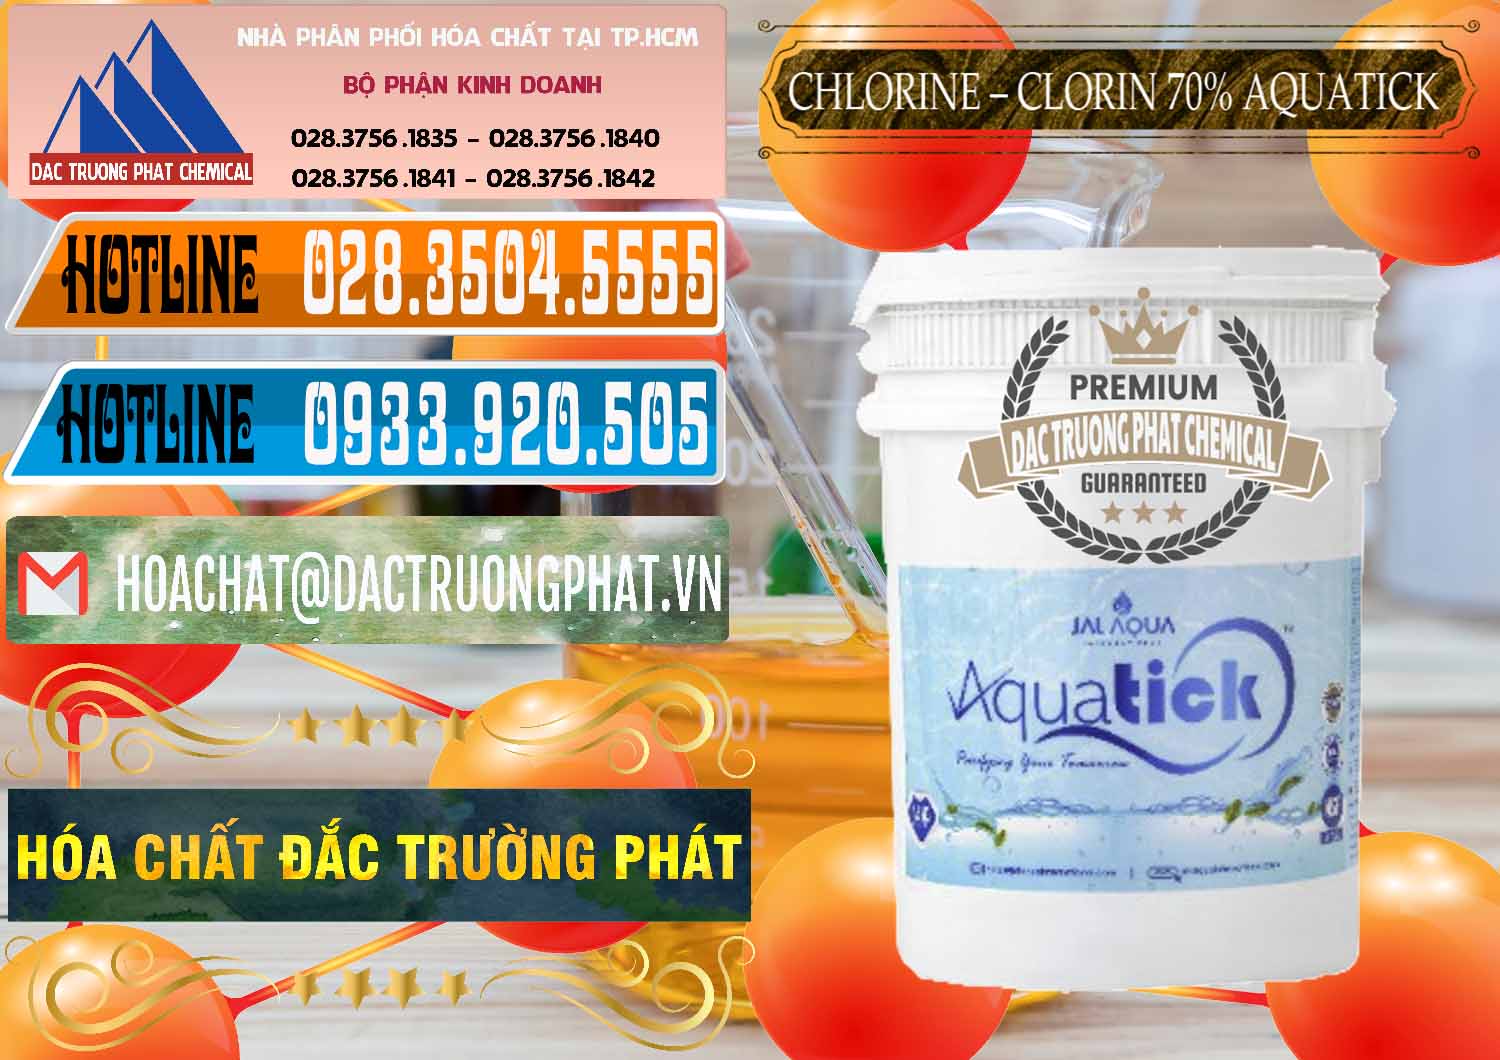 Công ty cung cấp _ bán Chlorine – Clorin 70% Aquatick Thùng Cao Jal Aqua Ấn Độ India - 0237 - Cty chuyên nhập khẩu & phân phối hóa chất tại TP.HCM - stmp.net